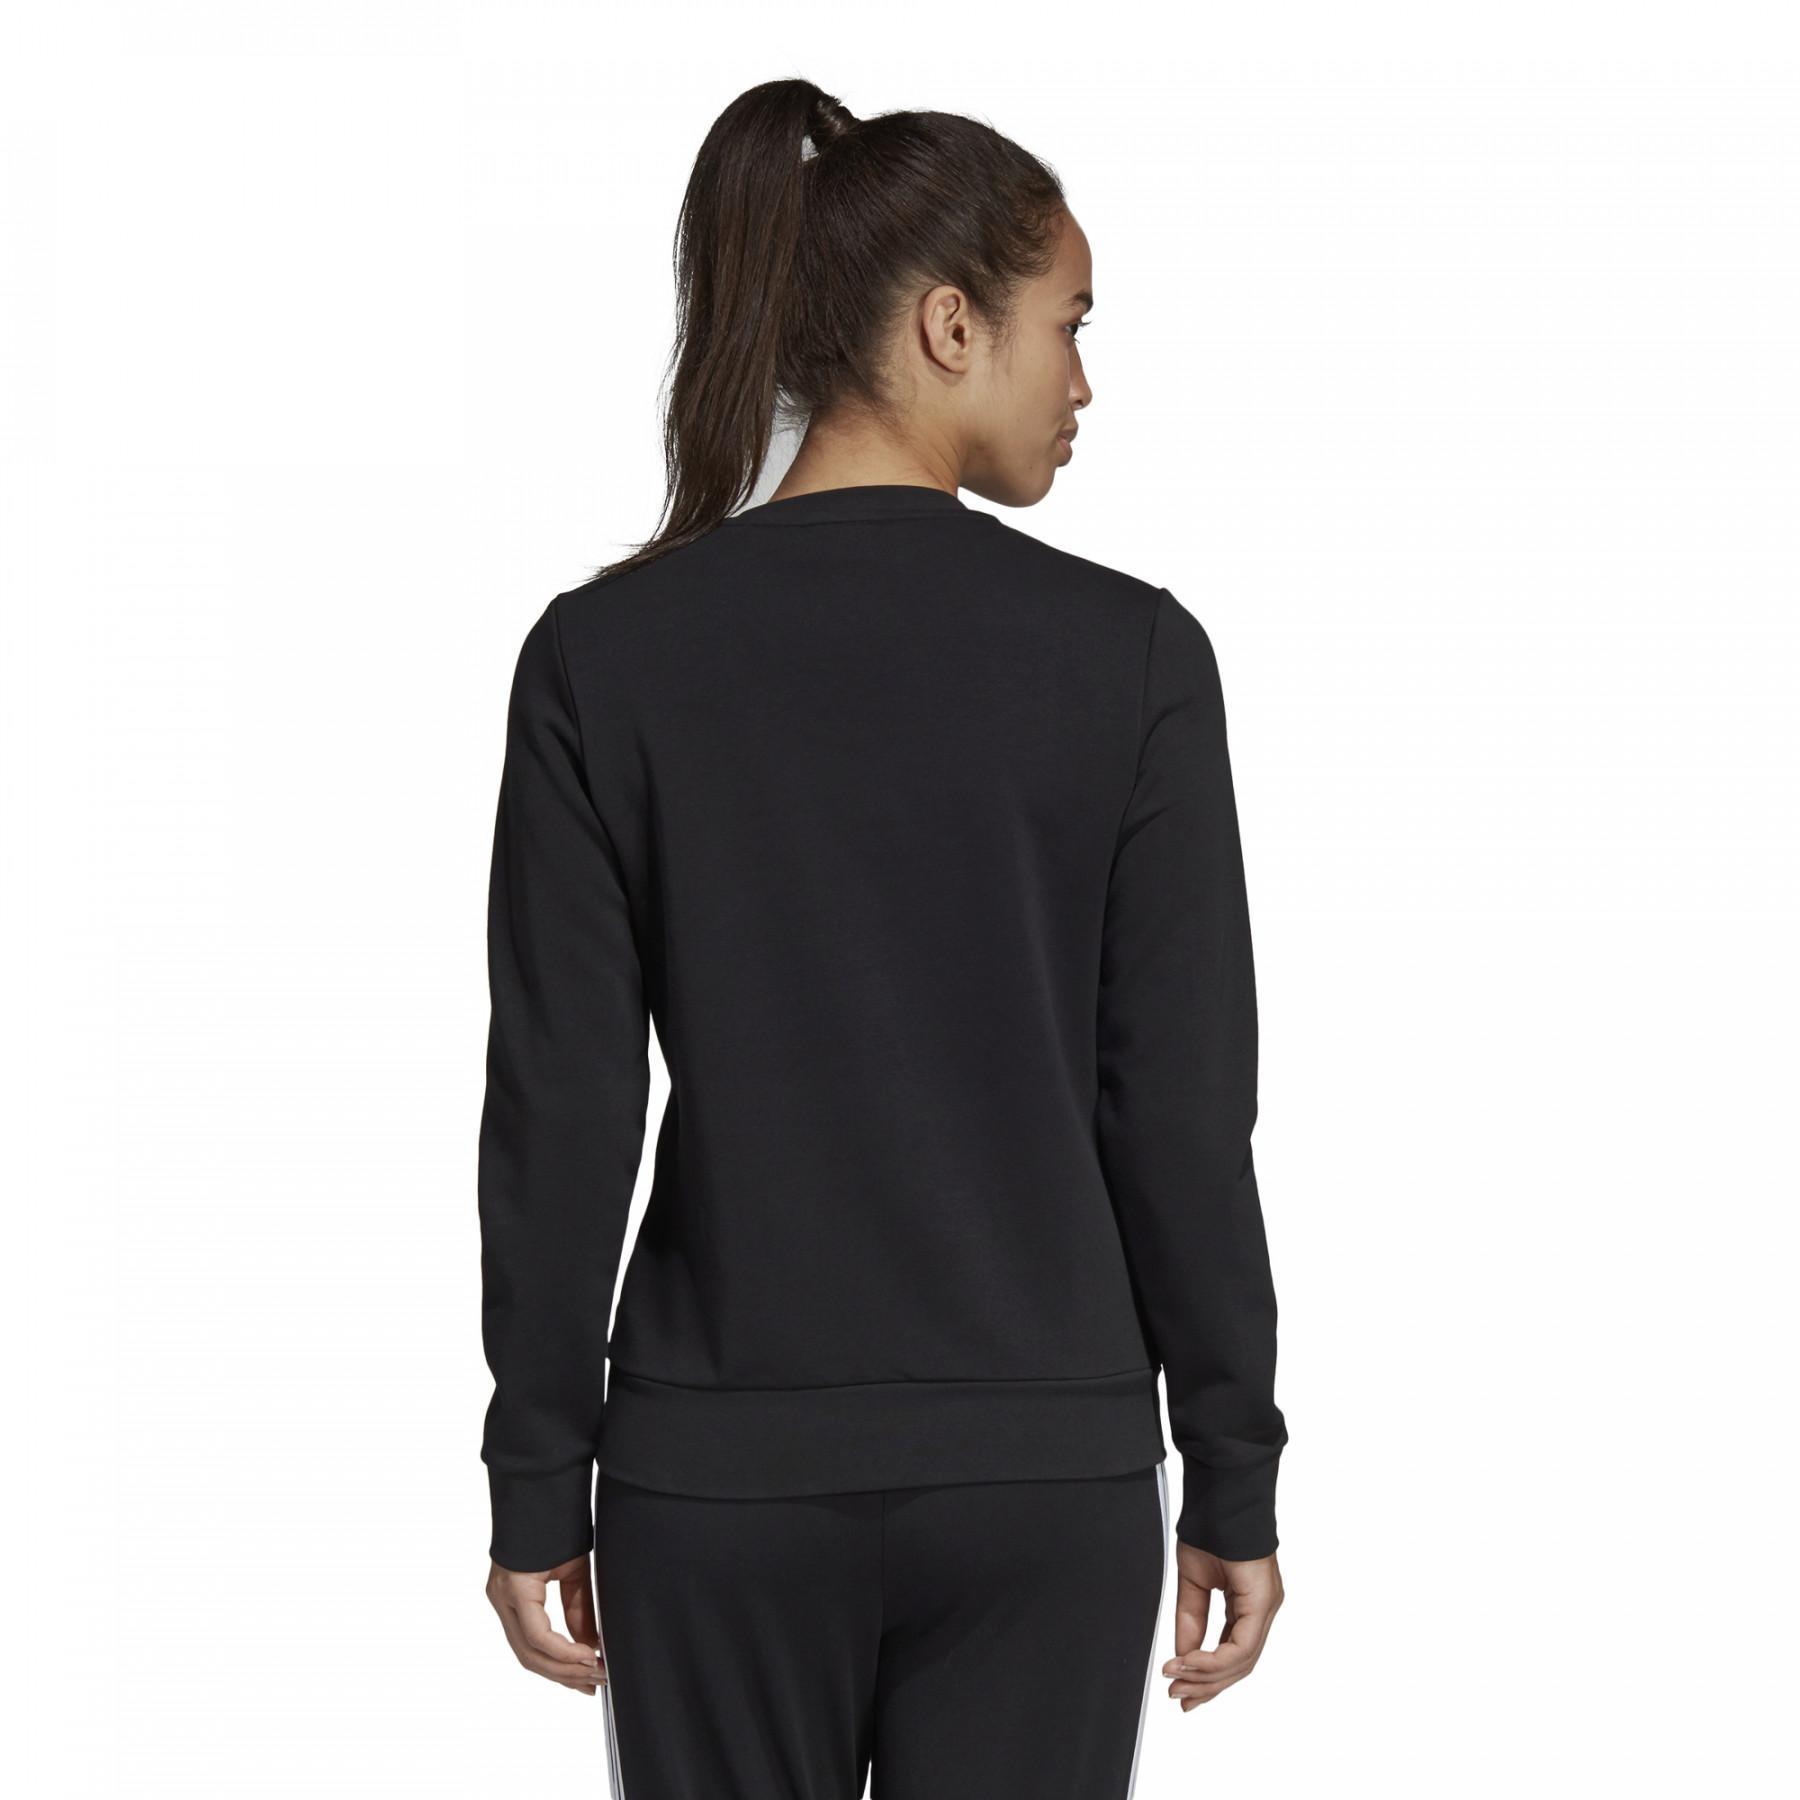 Sweatshirt woman adidas Essentials Linear